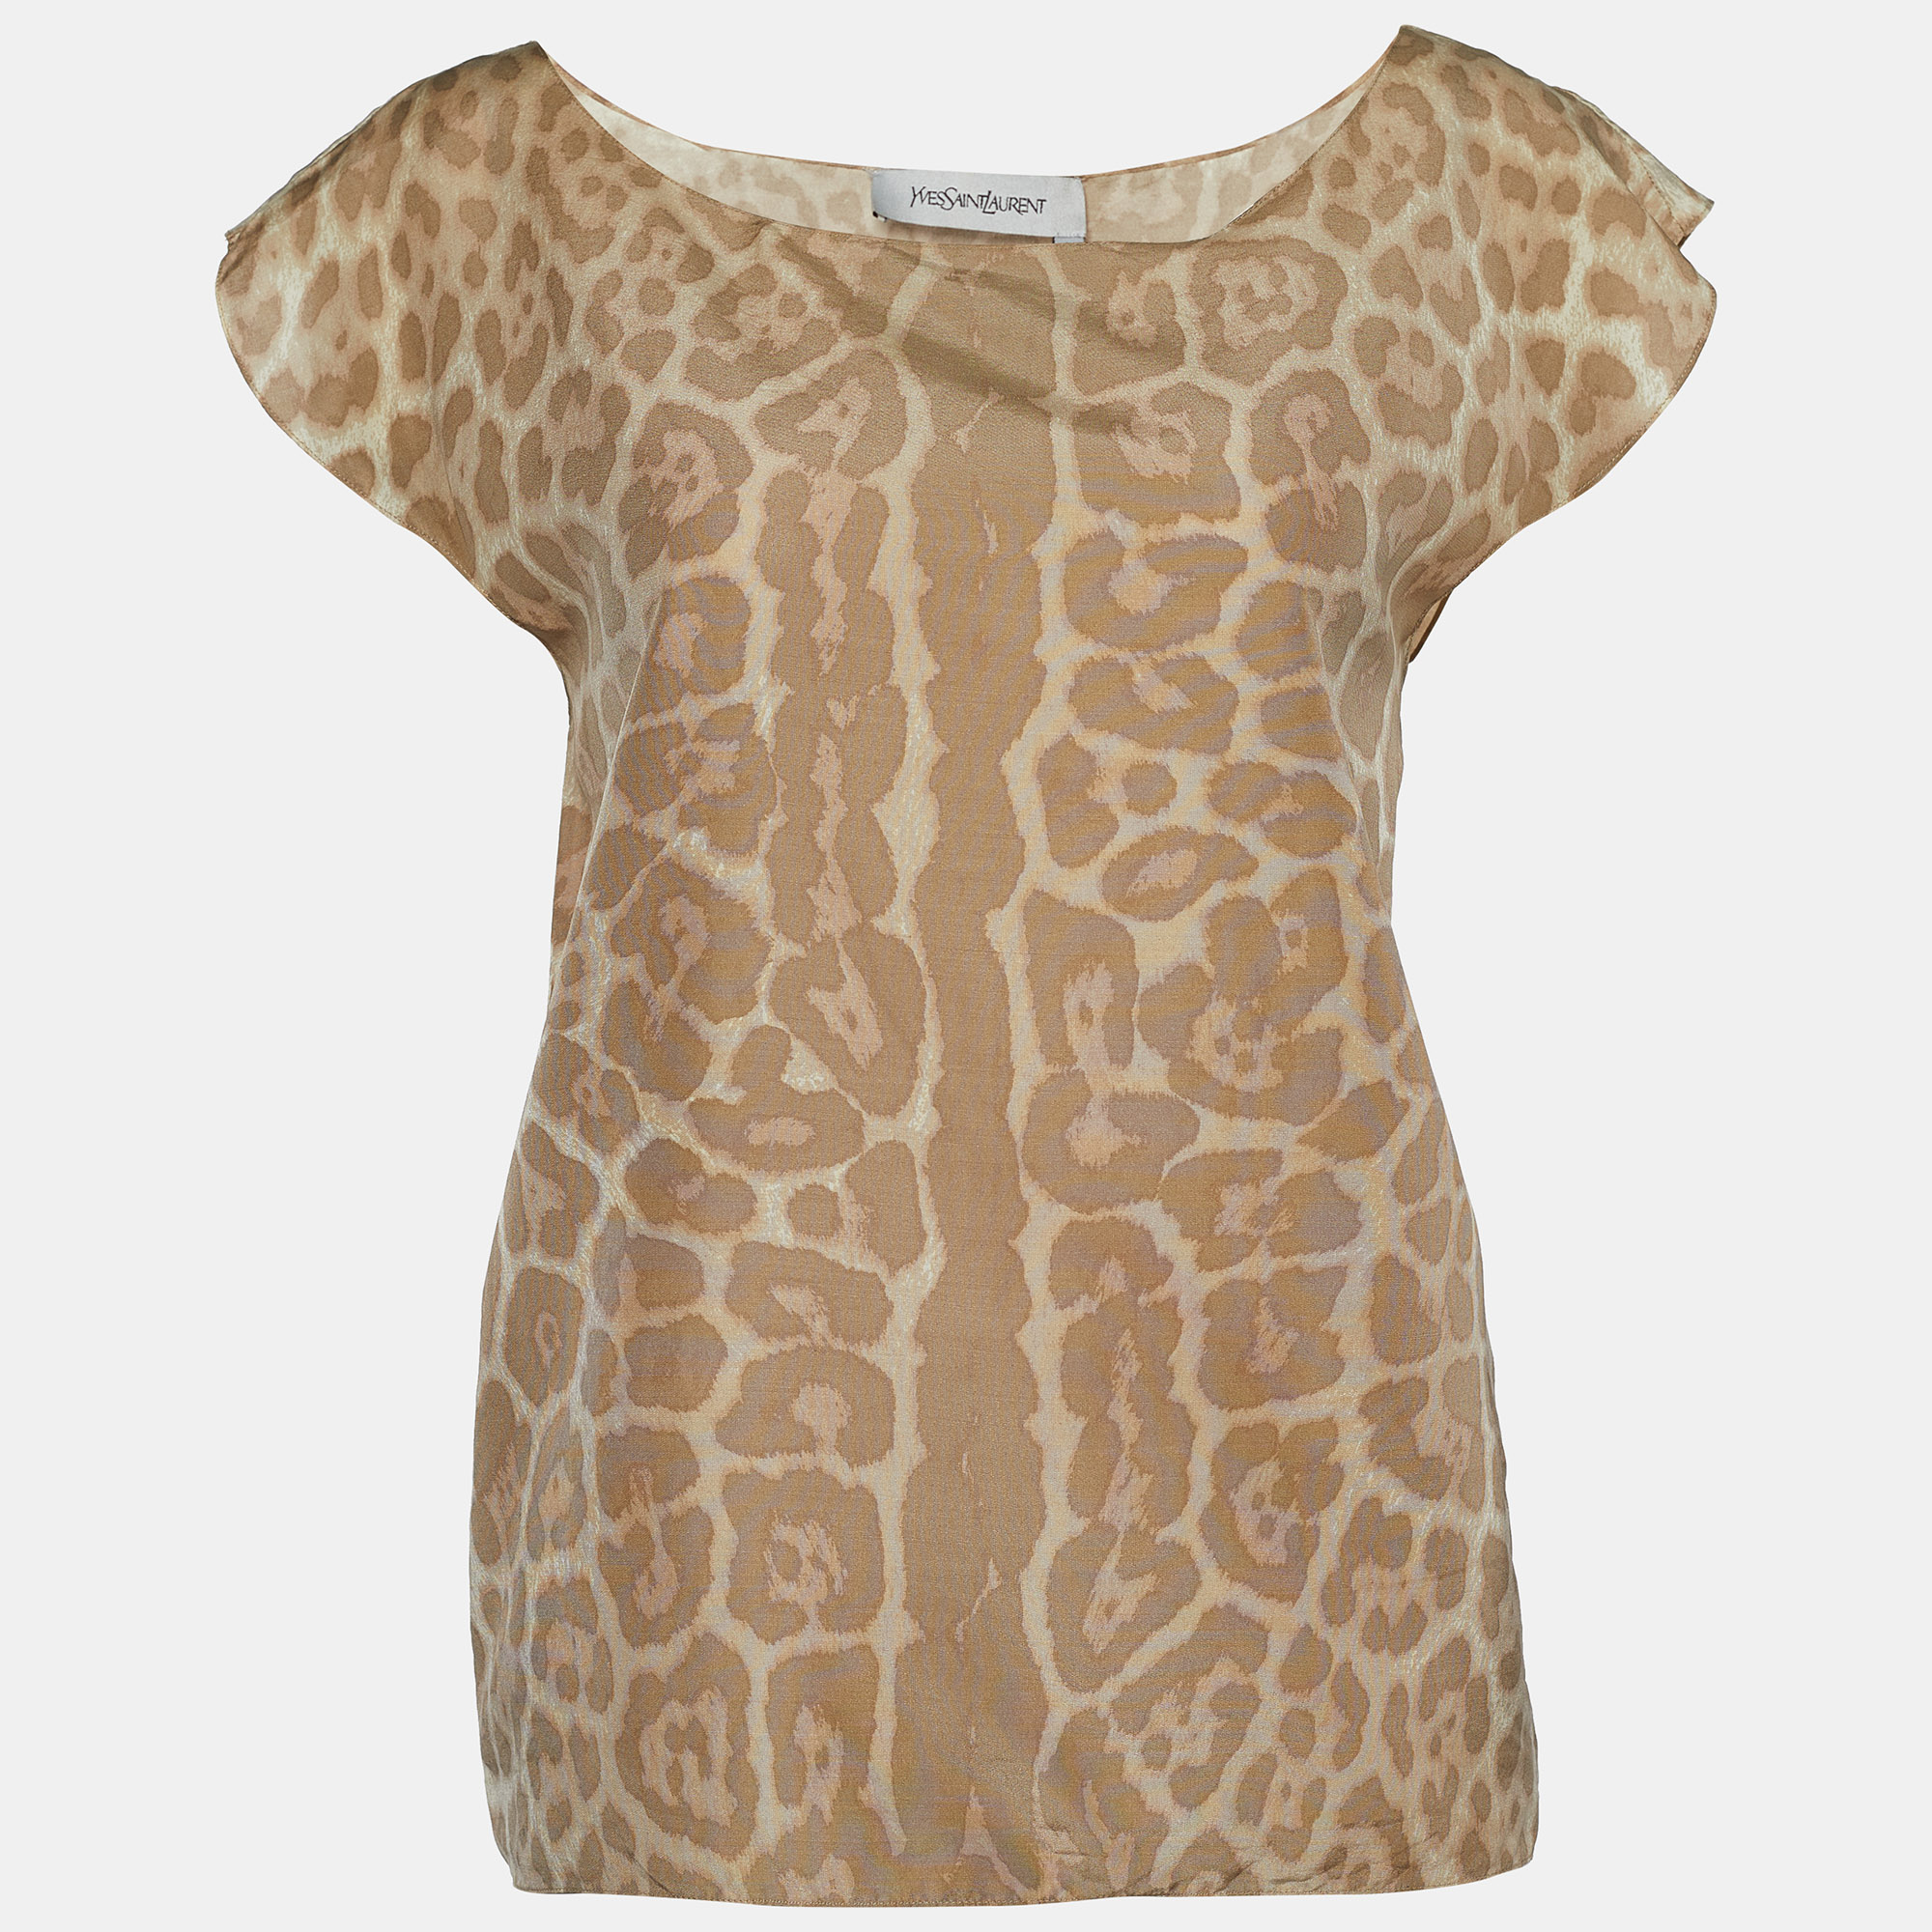 Yves saint laurent beige leopard print silk blouse m